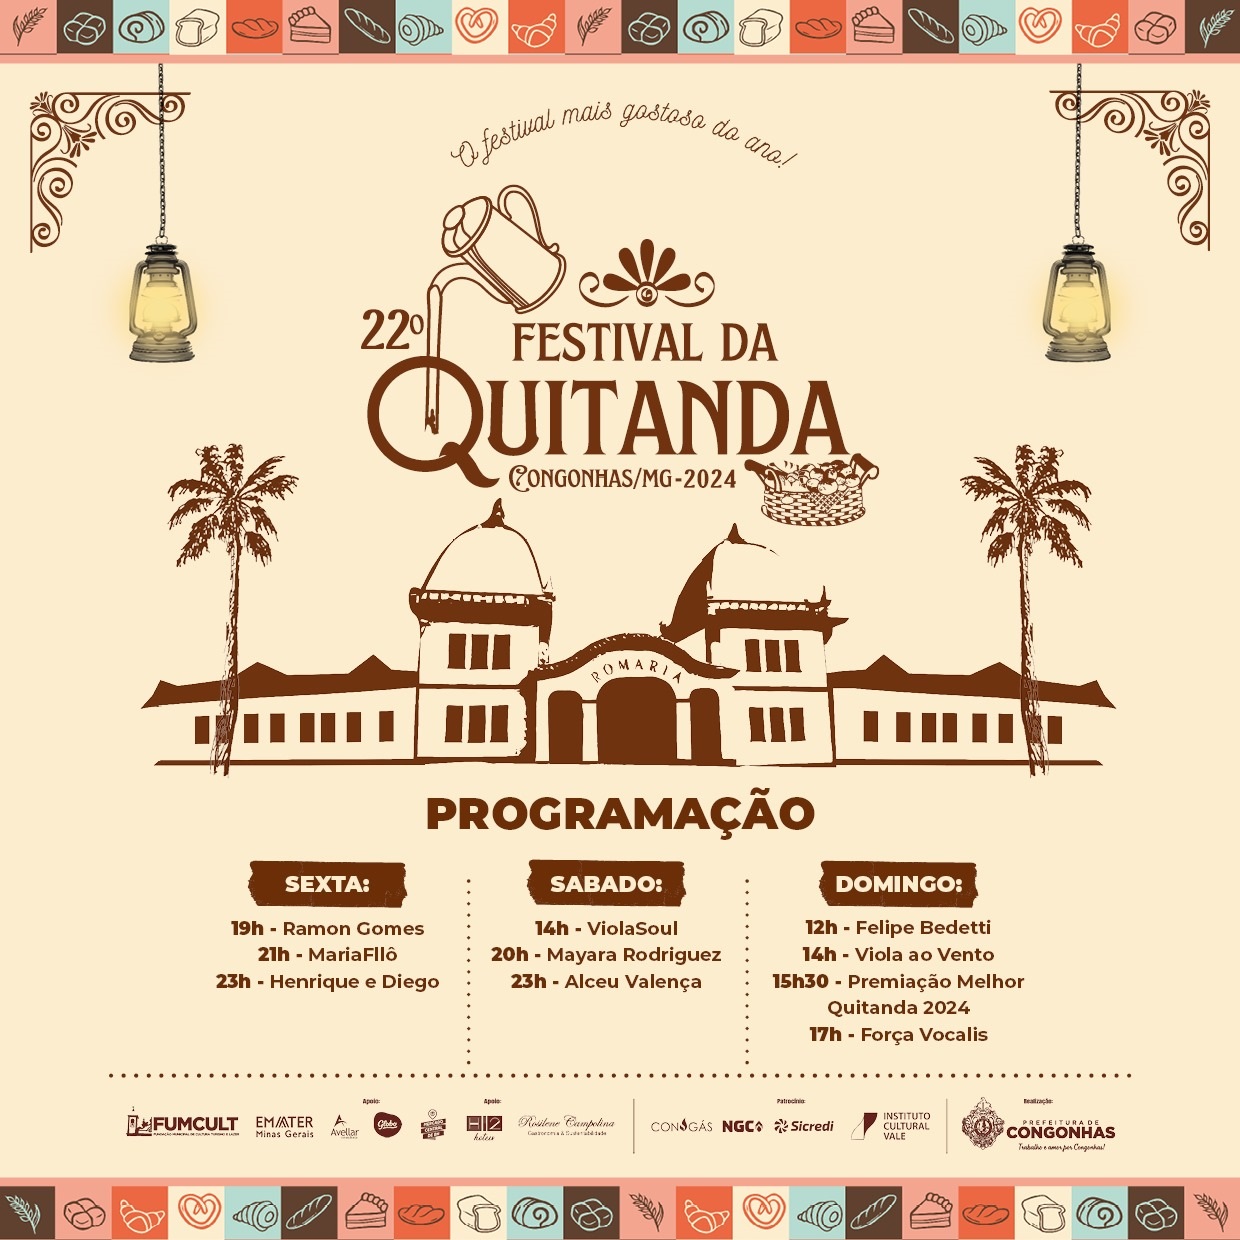 Começa hoje o maior festival de quintandas do Brasil e tem show de graça de Alceu Valença. Agende-se